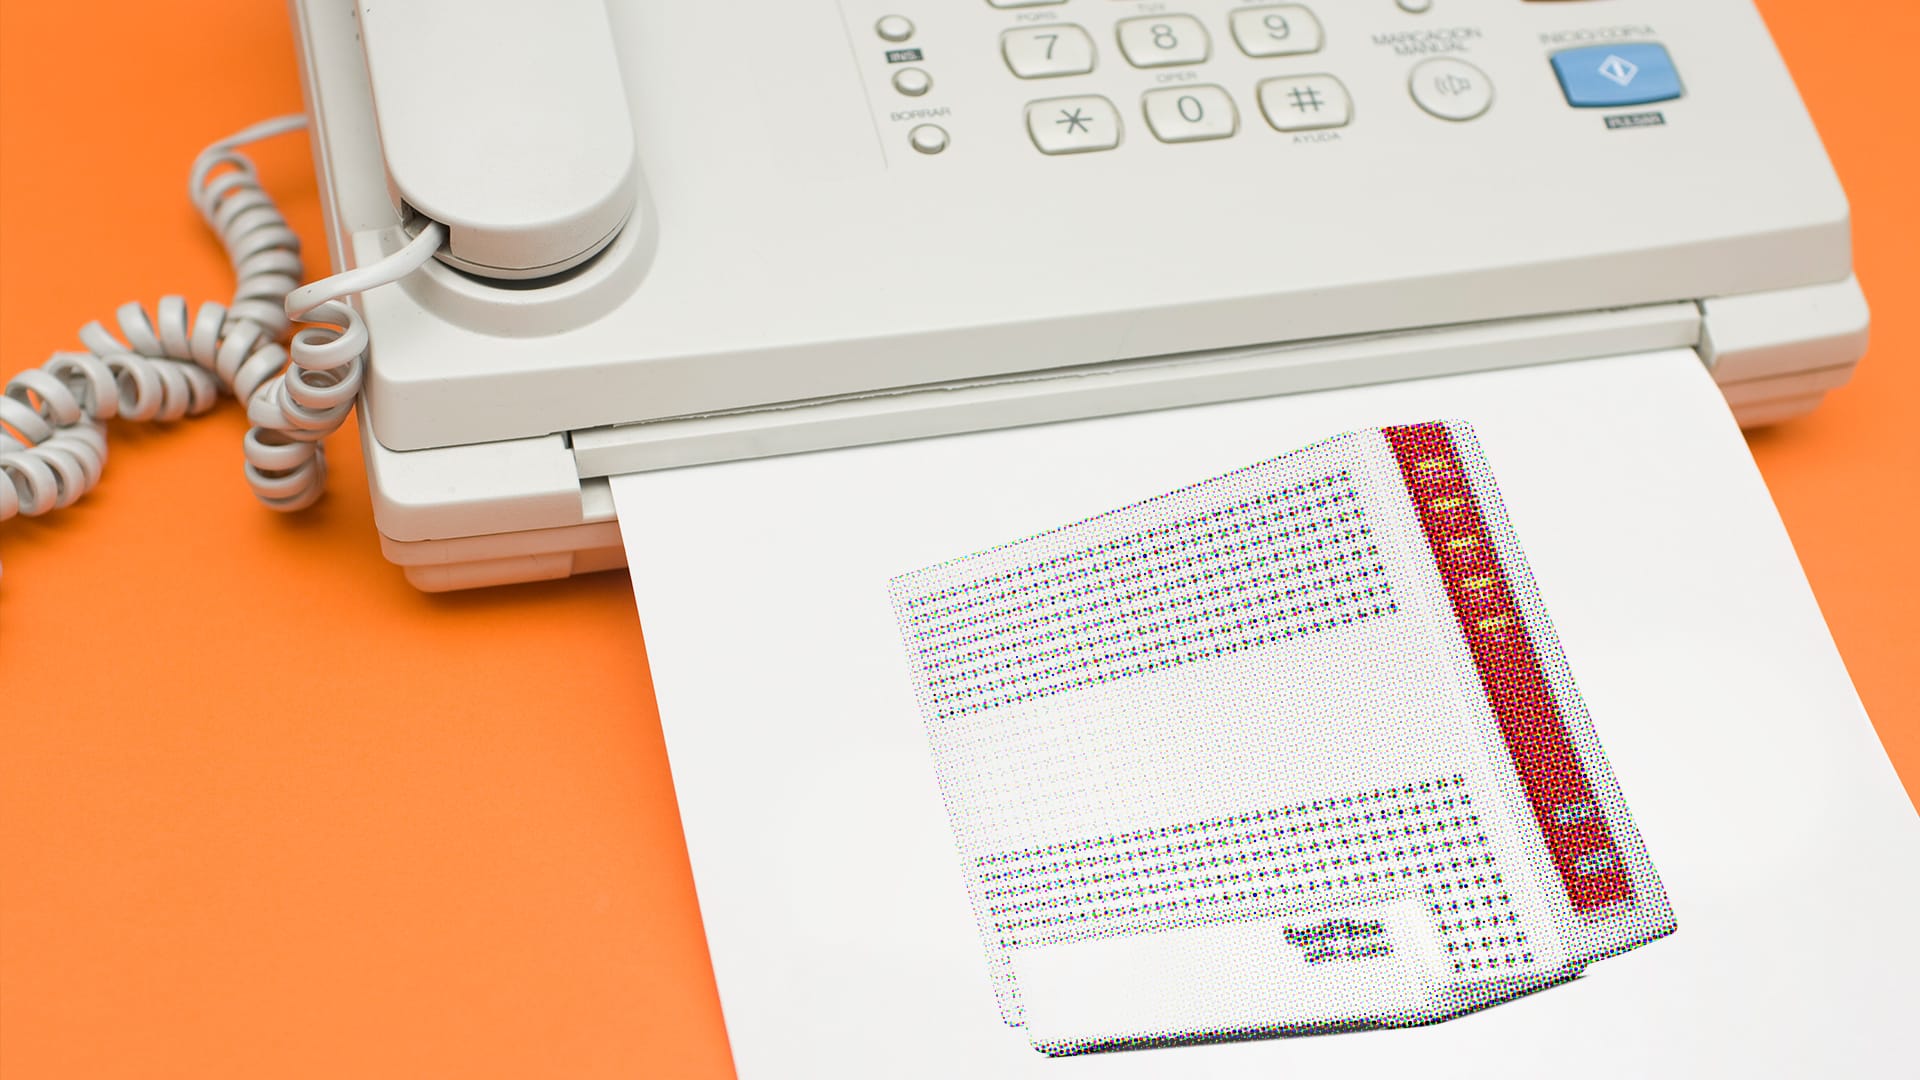 Manche Behörden oder Arztpraxen arbeiten noch mit Faxgeräten. Wenn Sie selbst ein Fax versenden wollen, reicht eine Fritzbox. Wir zeigen, wie Sie die Funktion einrichten.